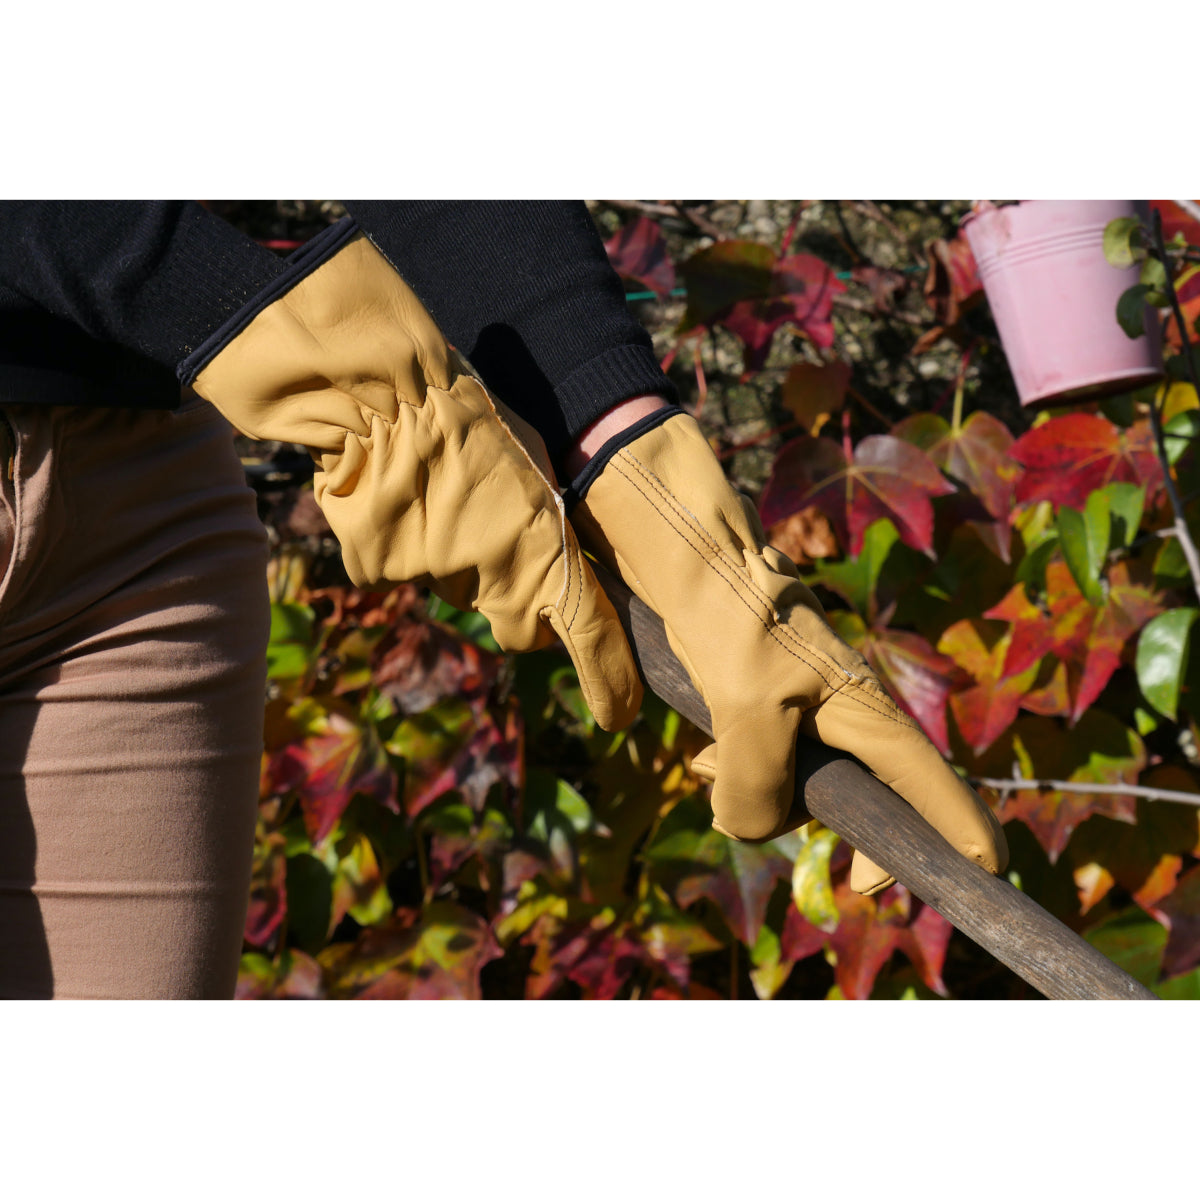 Gants jardinage - Outils de jardinage : gants, arrosoirs et sécateurs